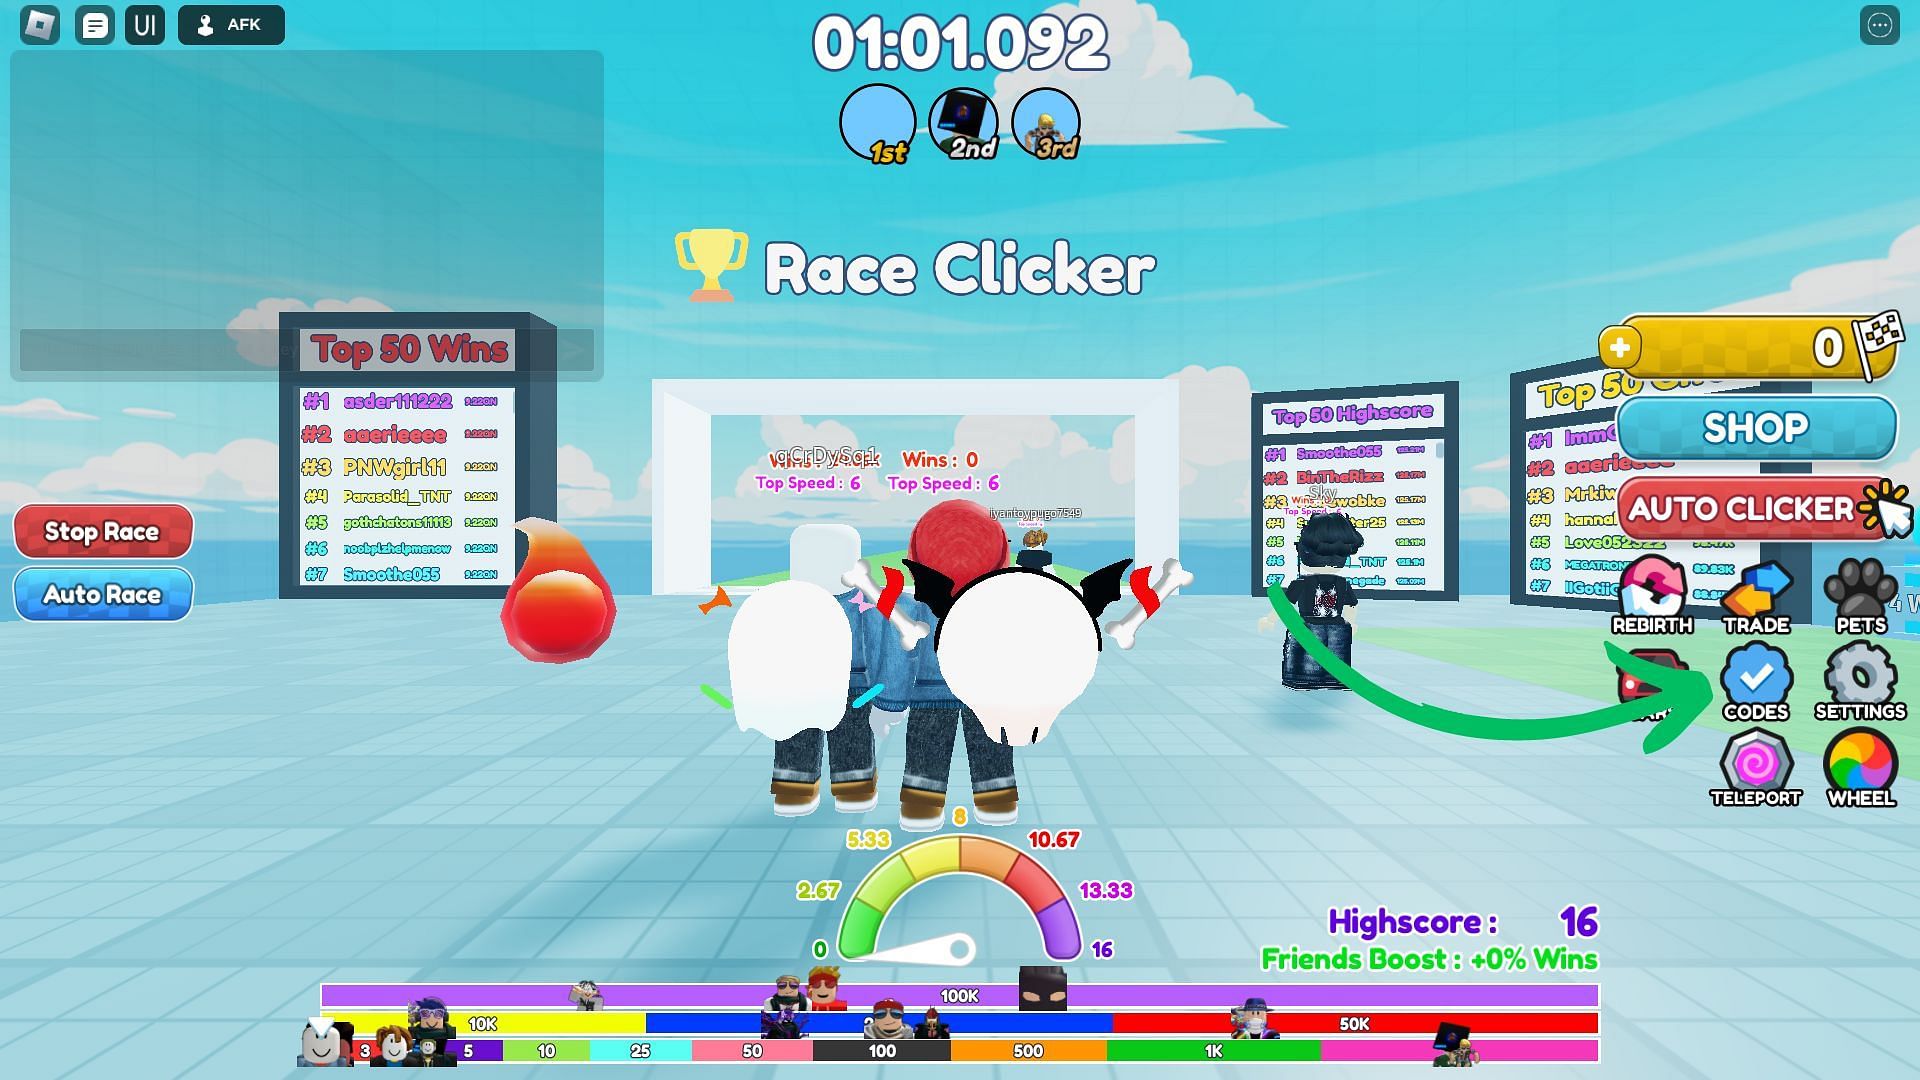 Race Clicker codes icon (Image via Roblox and Sportskeeda)